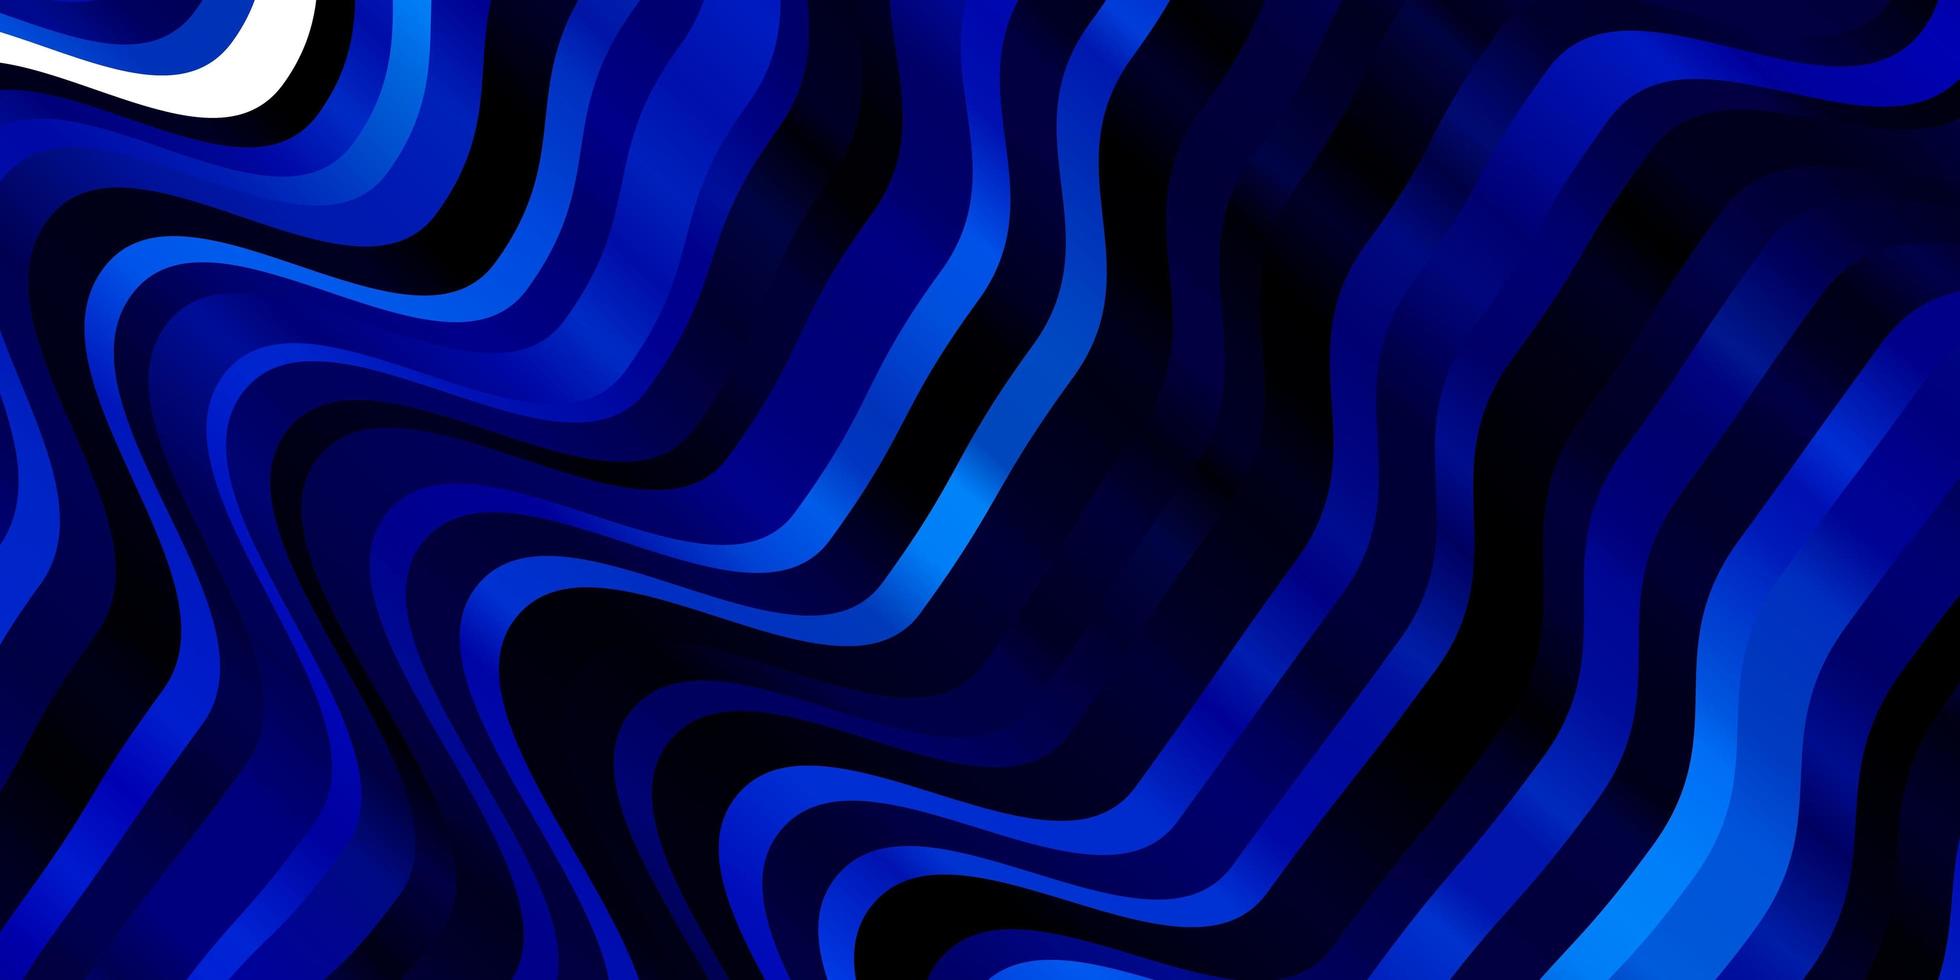 modelo de vetor azul escuro com linhas curvas.